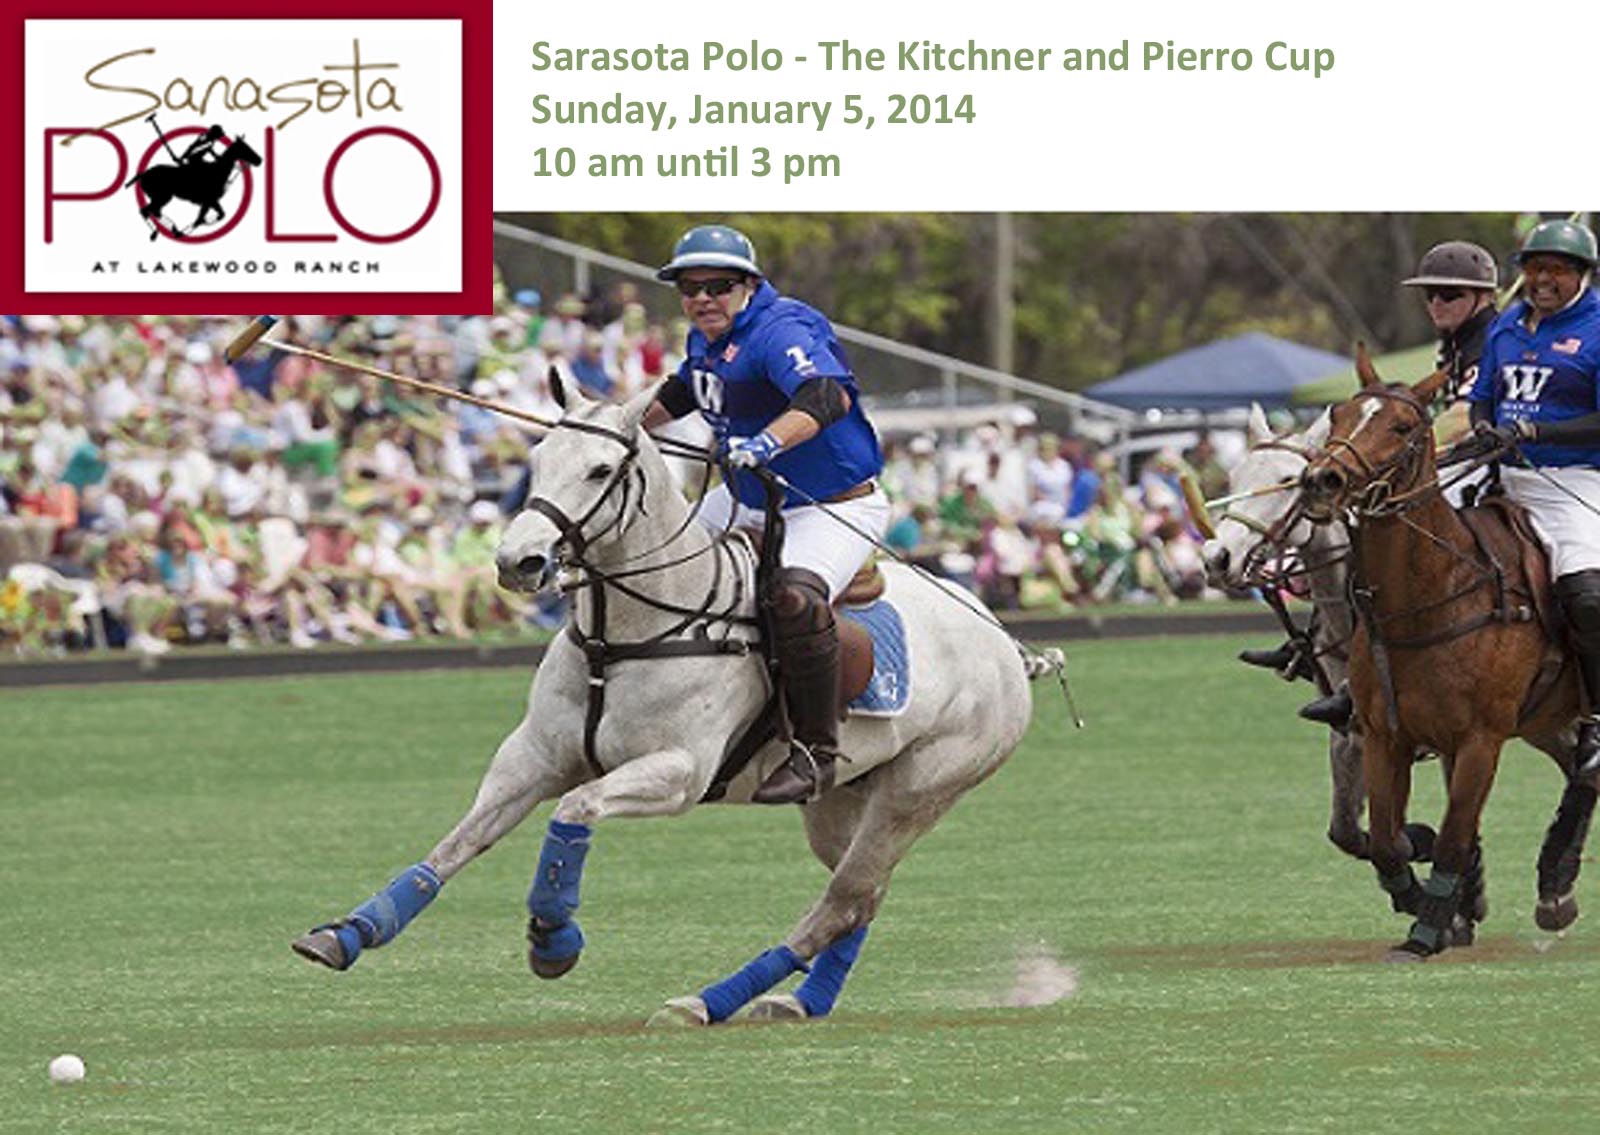 January 5, 2014 - Sarasota Polo Club